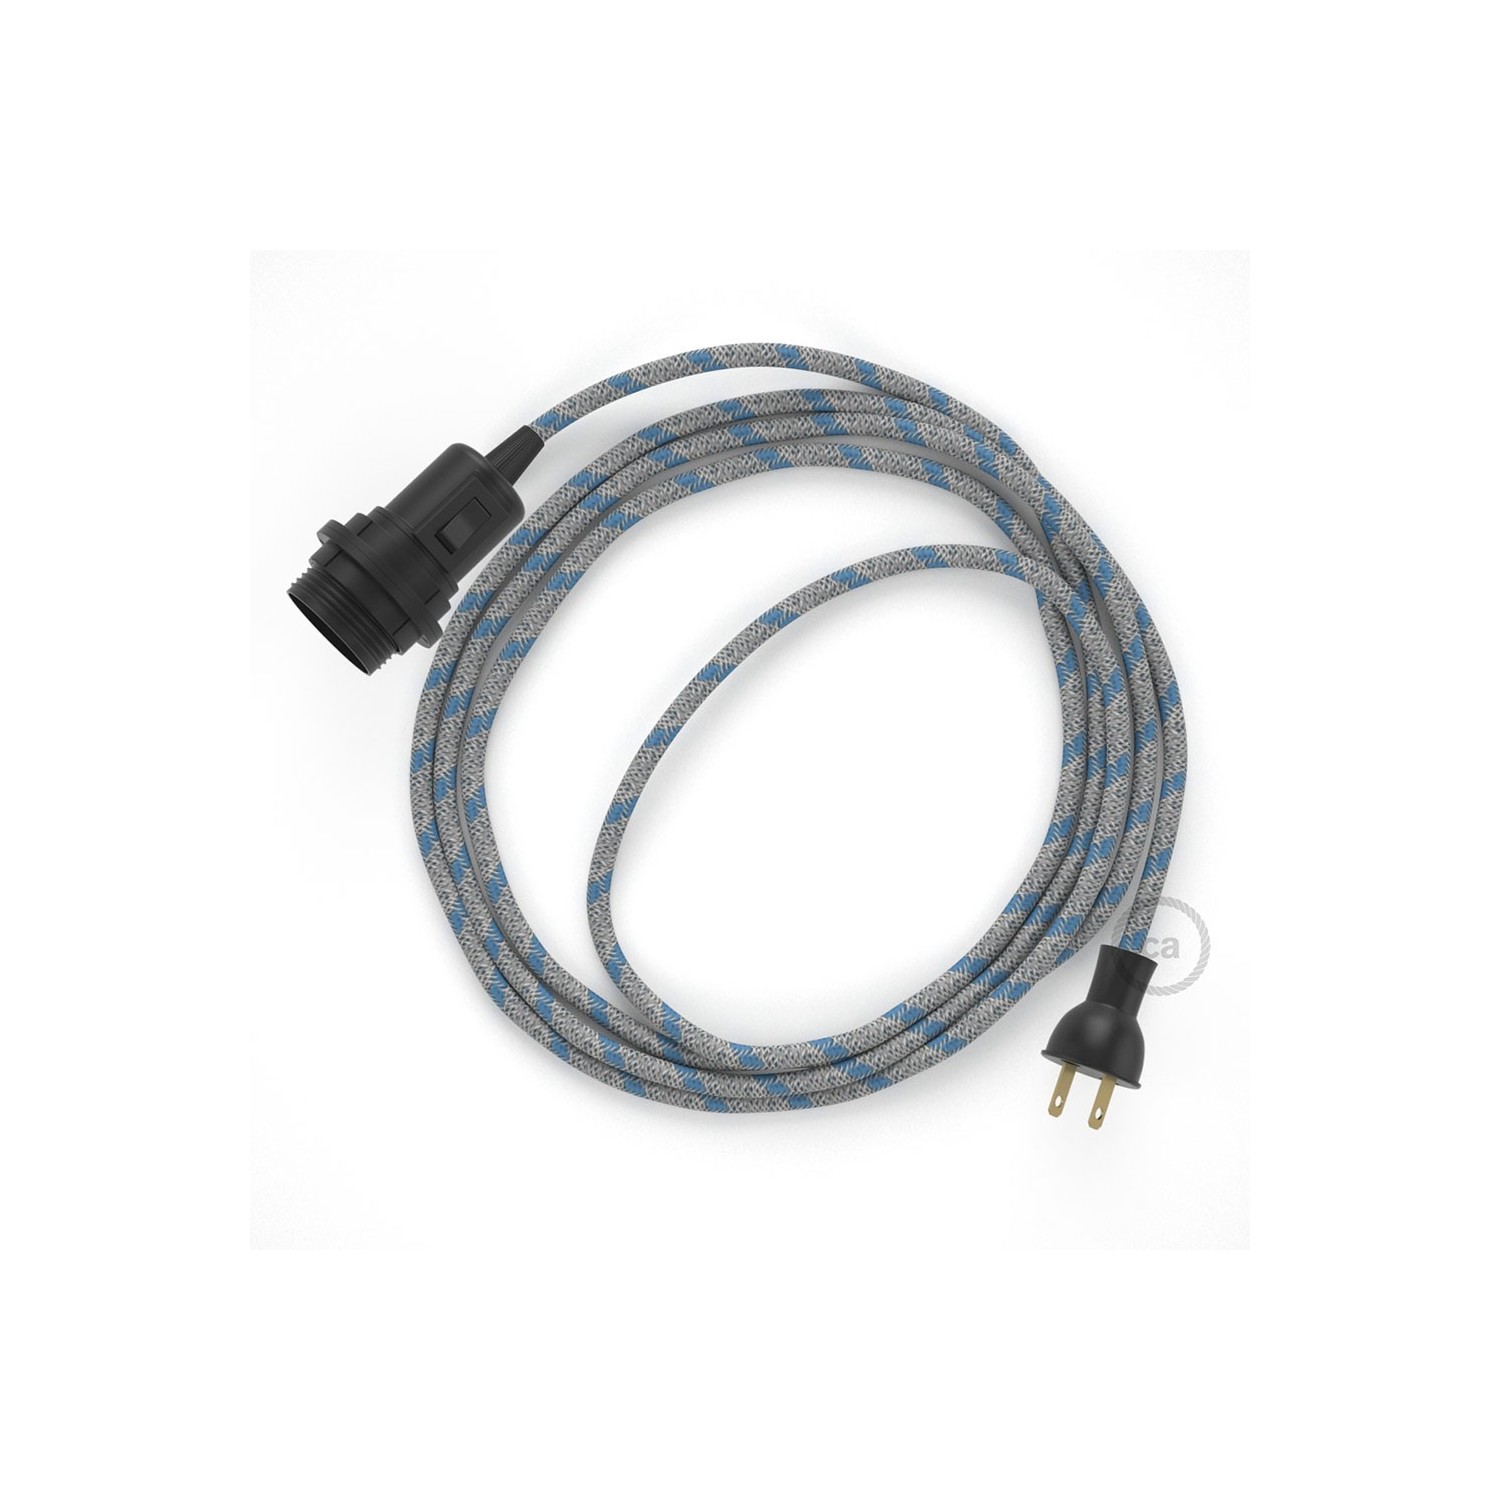 Crea tu Snake para pantalla con cable de Rayas Azul Steward RD55, socket y enchufe, y trae la luz donde tu quieras.